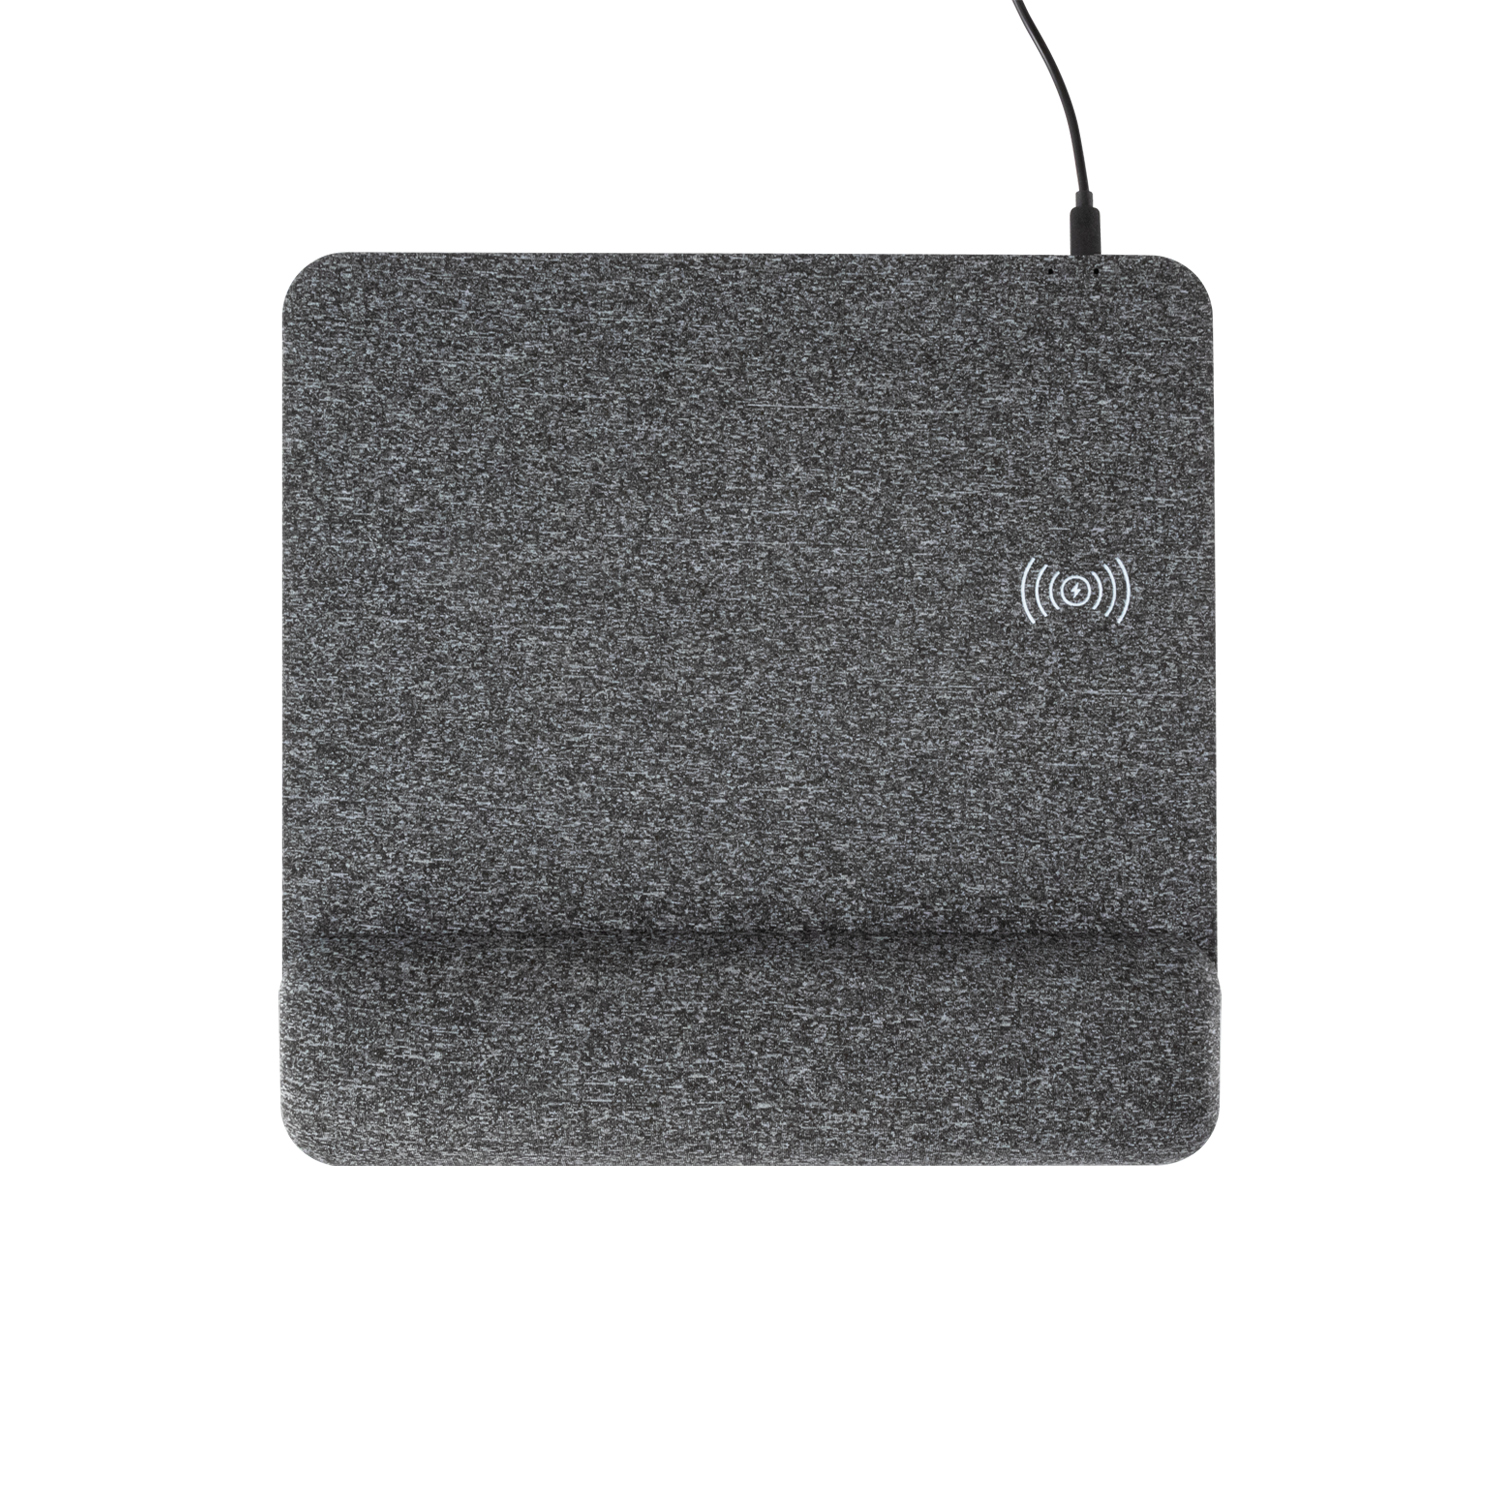 Musthong Nouveau Design Tapis de souris de charge sans fil rapide avec repose-poignet en mousse à mémoire de soutien et base antidérapante pour ordinateur portable de bureau (MH-D86)